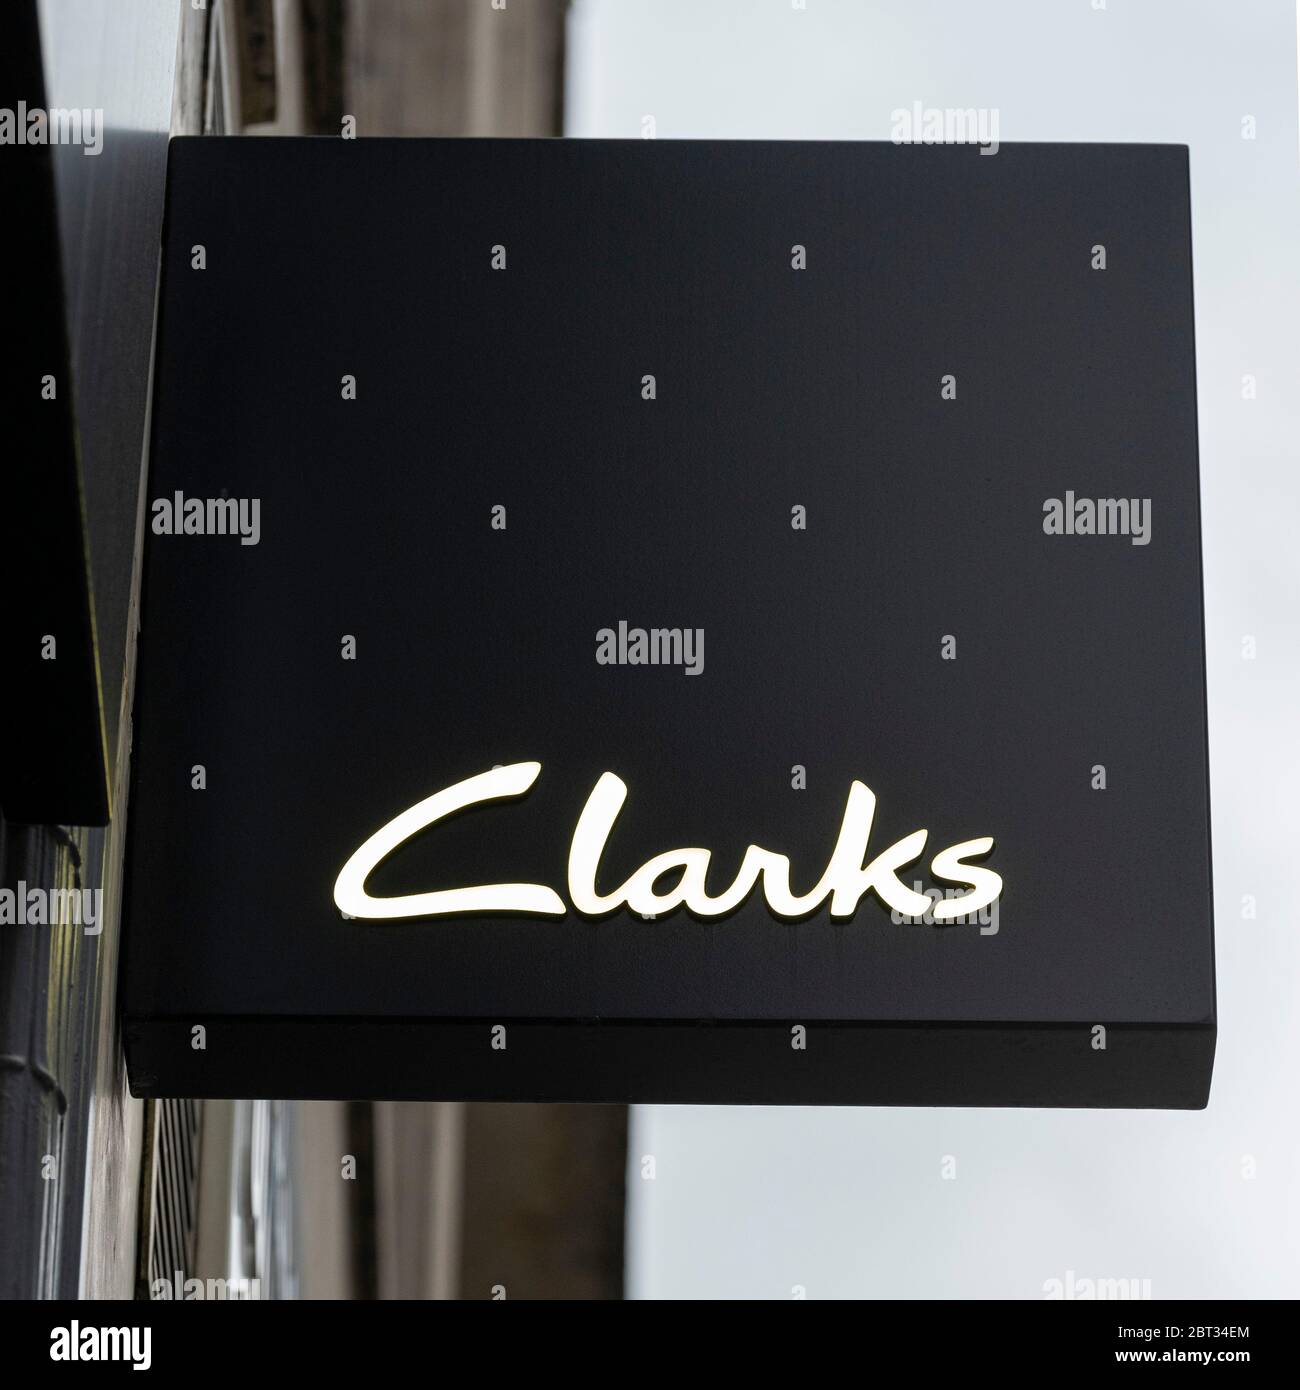 Logotipo de Clarks visto en una de sus sucursales en Oxford  Street.British-fabricante internacional de zapatos y minorista C. & J. Clark  International Ltd, el comercio como clarks es cortar casi 1,000 puestos